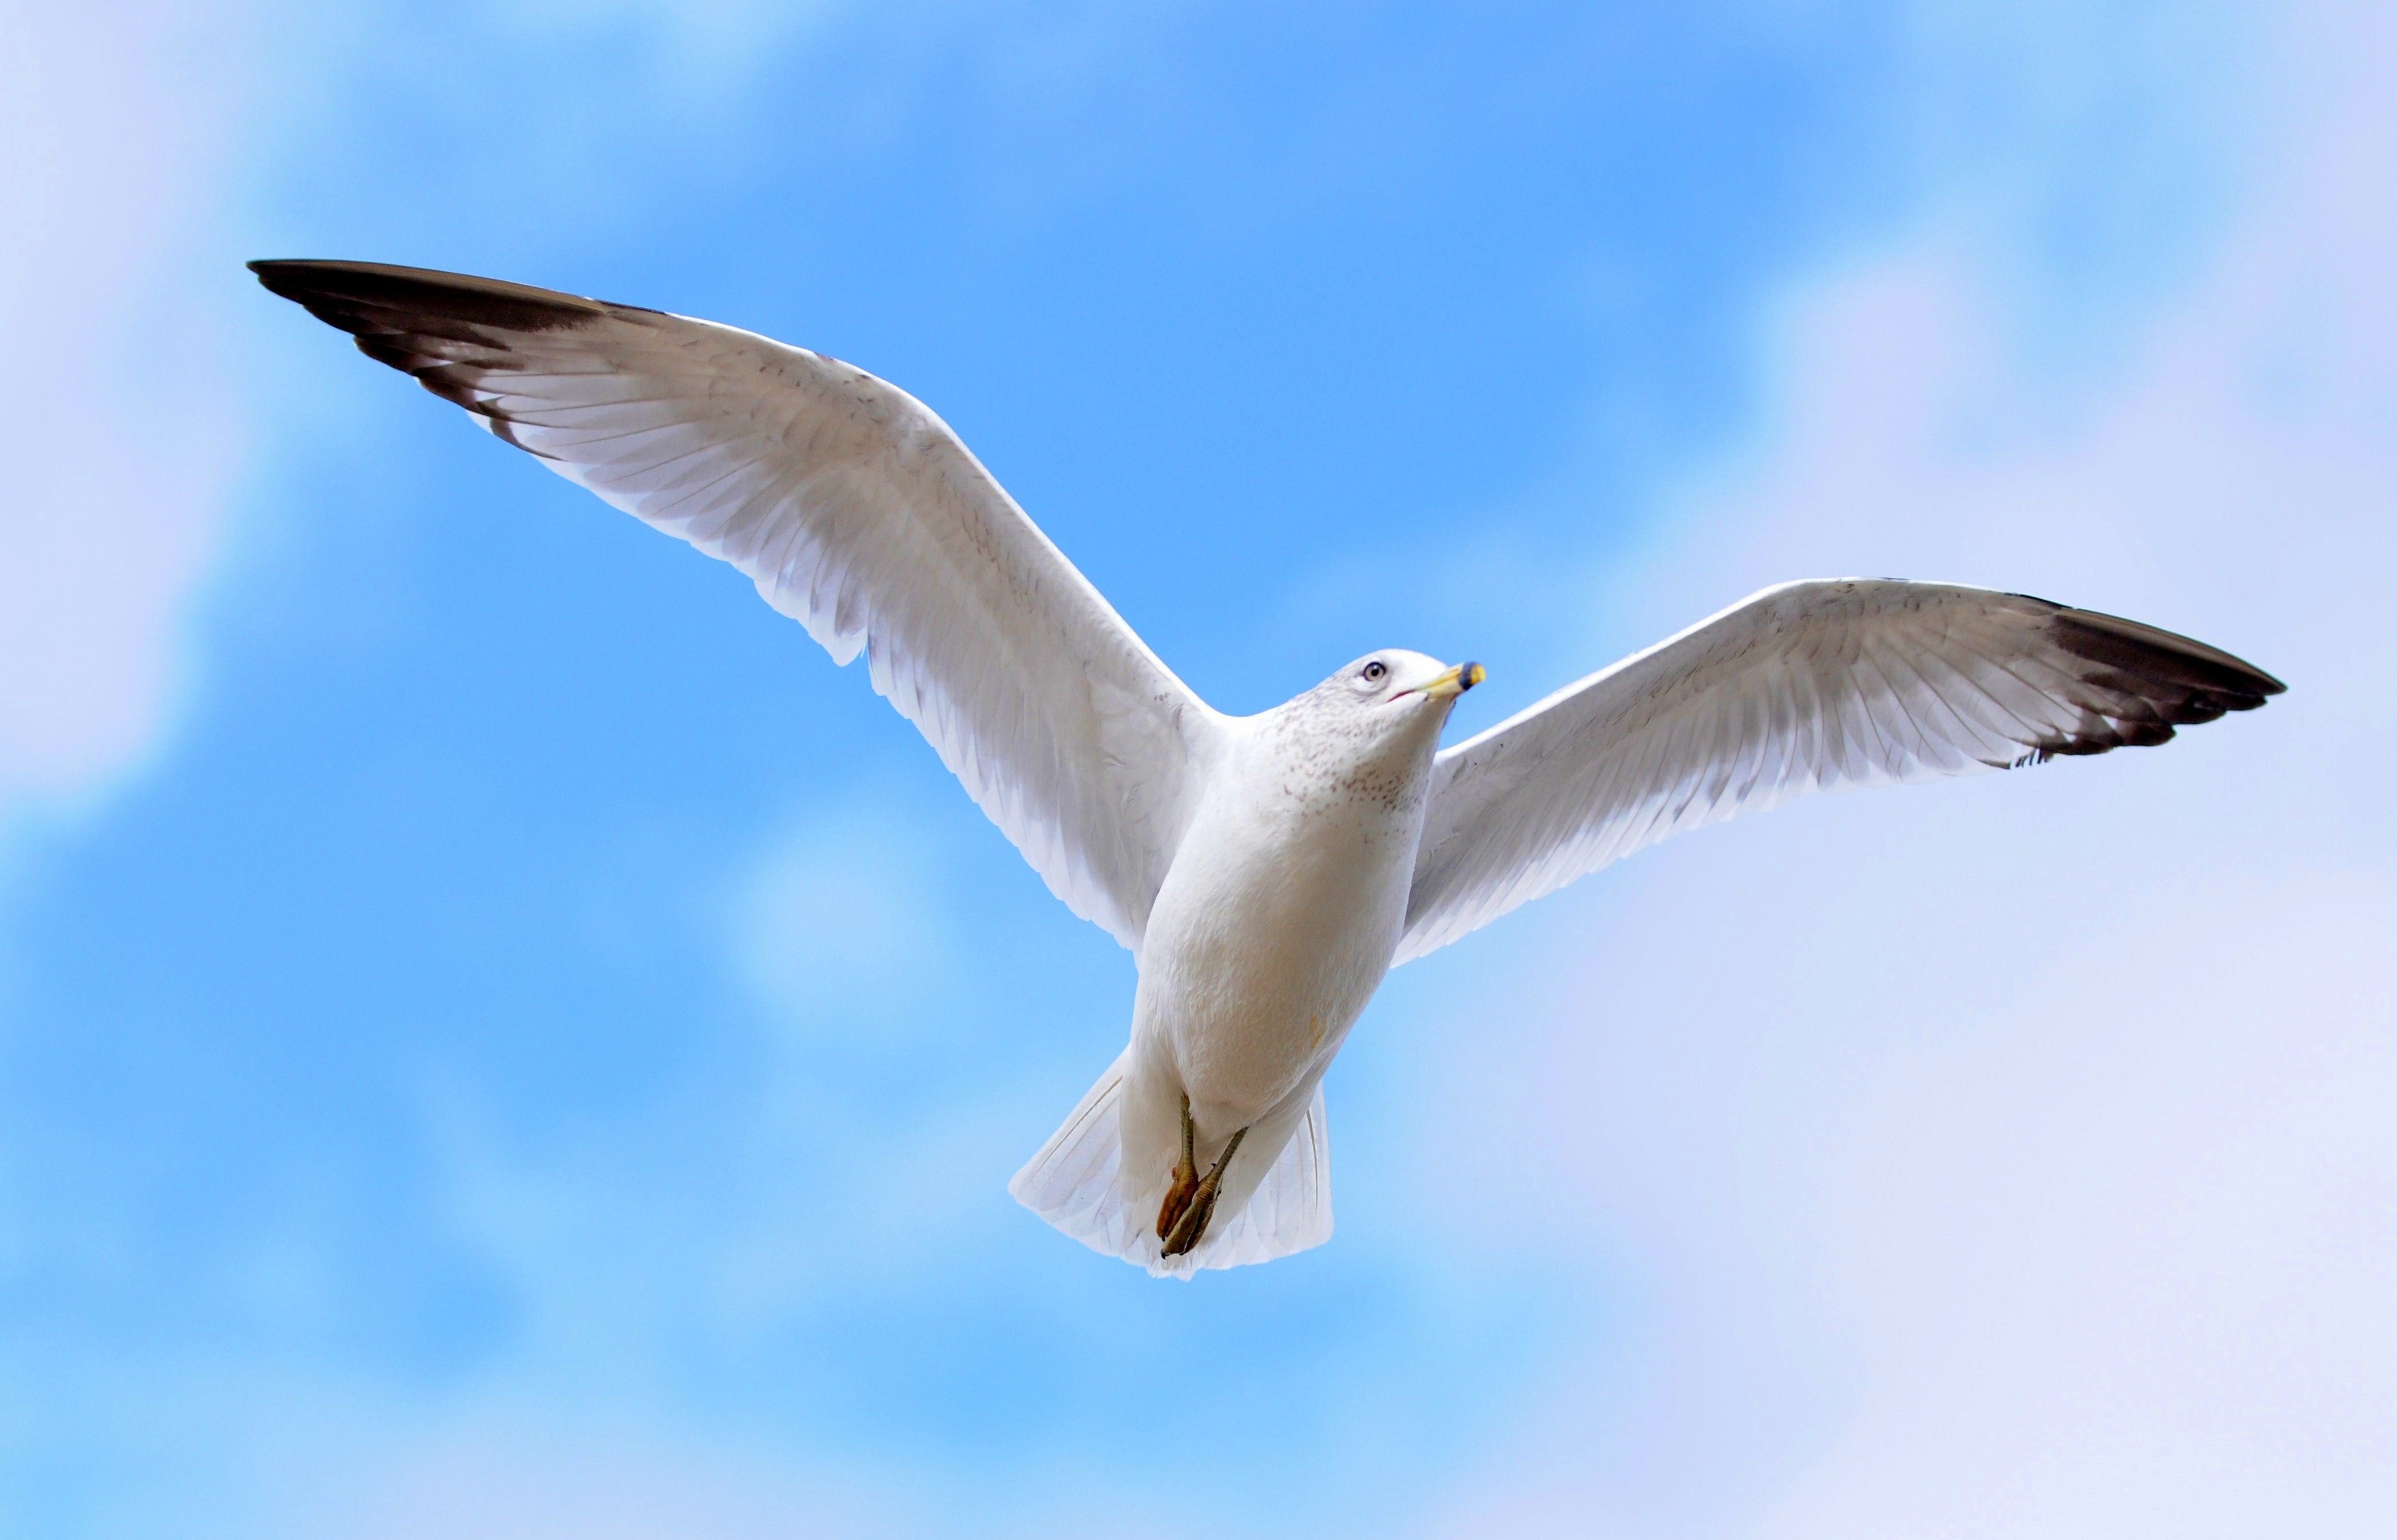 دانلود تصویر دیدنی یک پرنده وحشی به رنگ سفید زیبا در آسمان